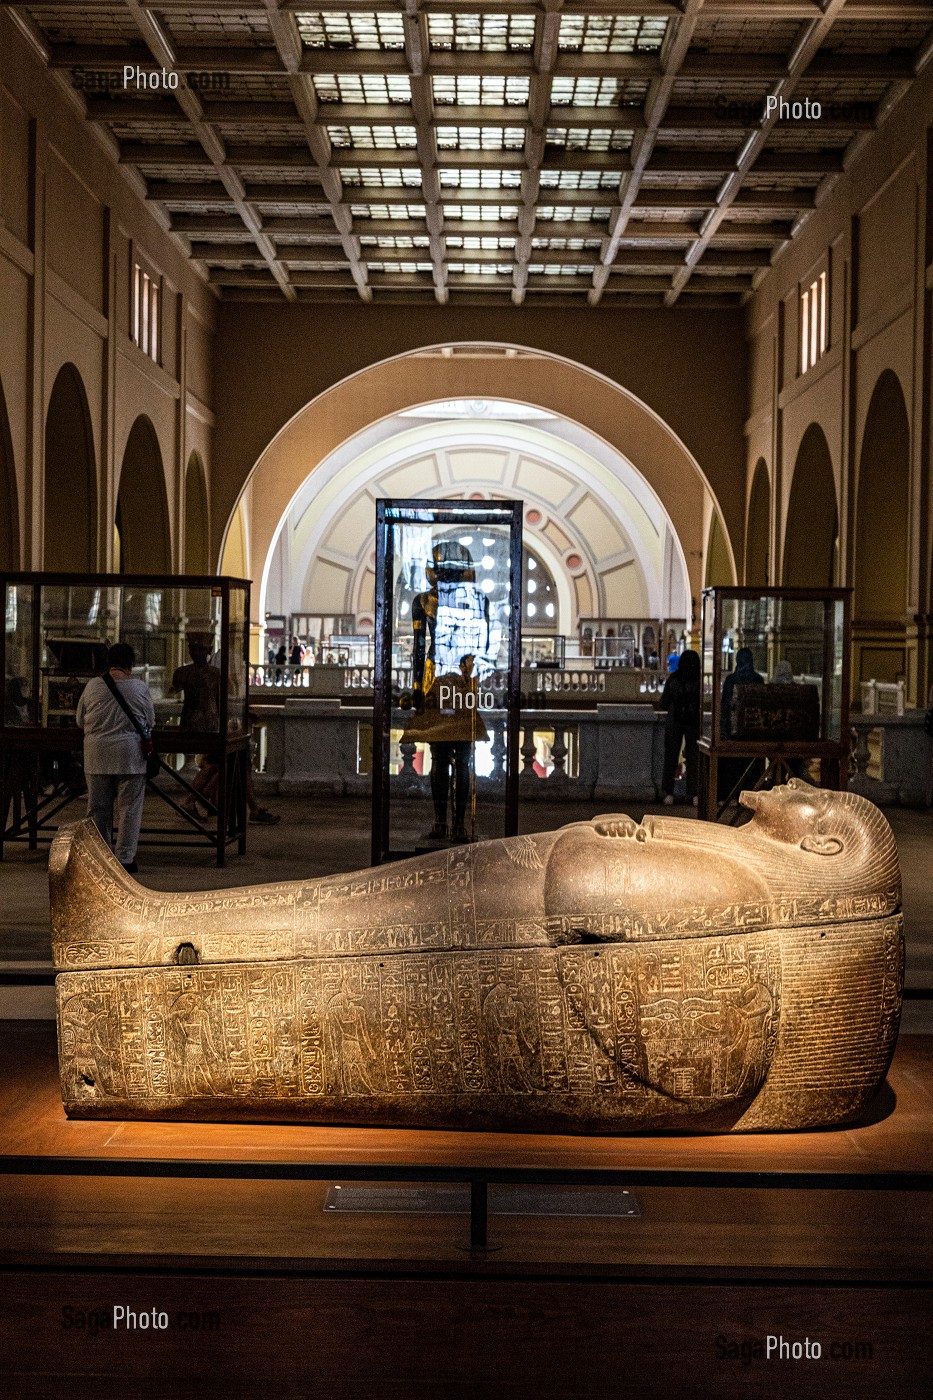 SARCOPHAGE, MUSEE EGYPTIEN DU CAIRE CONSACRE A L'ANTIQUITE EGYPTIENNE, LE CAIRE, EGYPTE, AFRIQUE 